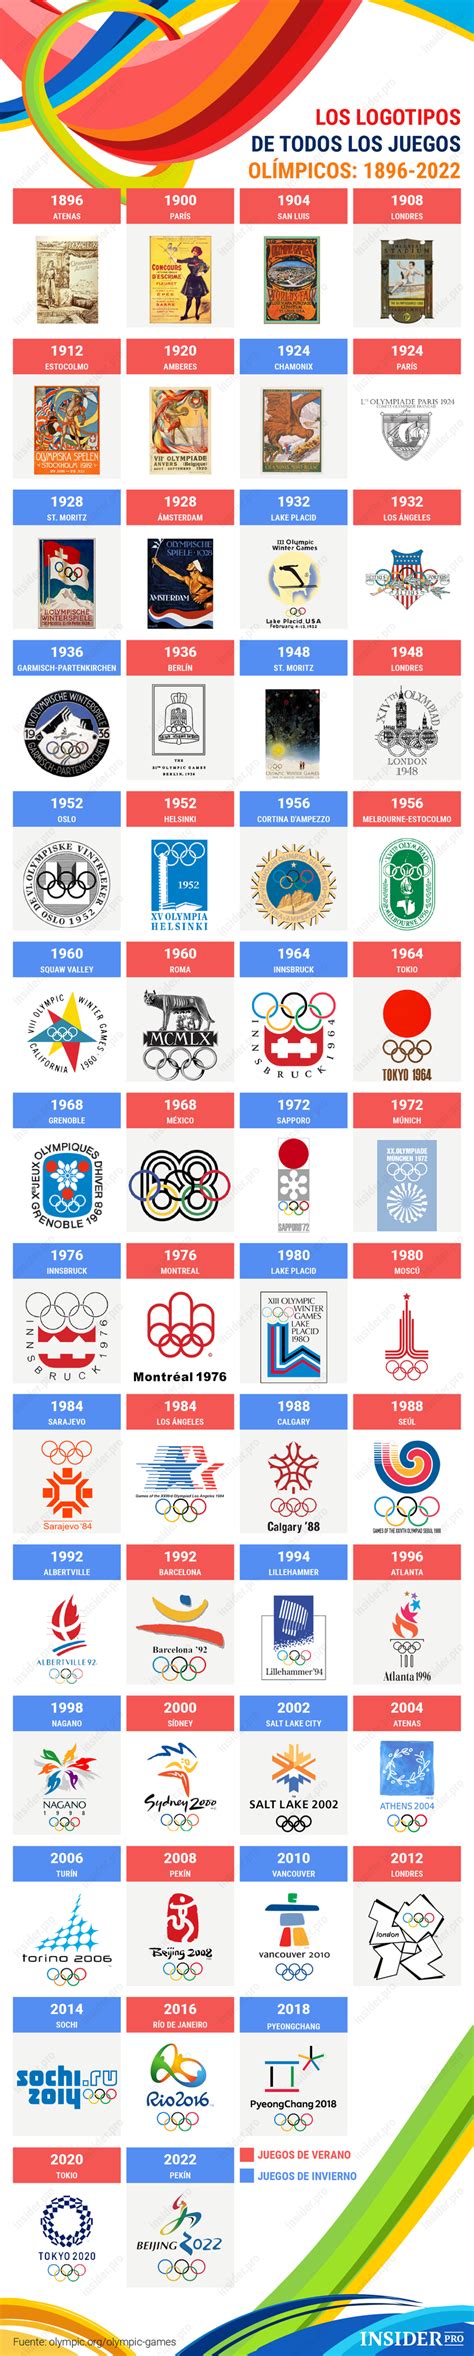 Why don't you let us know. Infografía: Todos los logos de los Juegos Olímpicos desde 1896 hasta 2022 | Infografía | Insider.pro